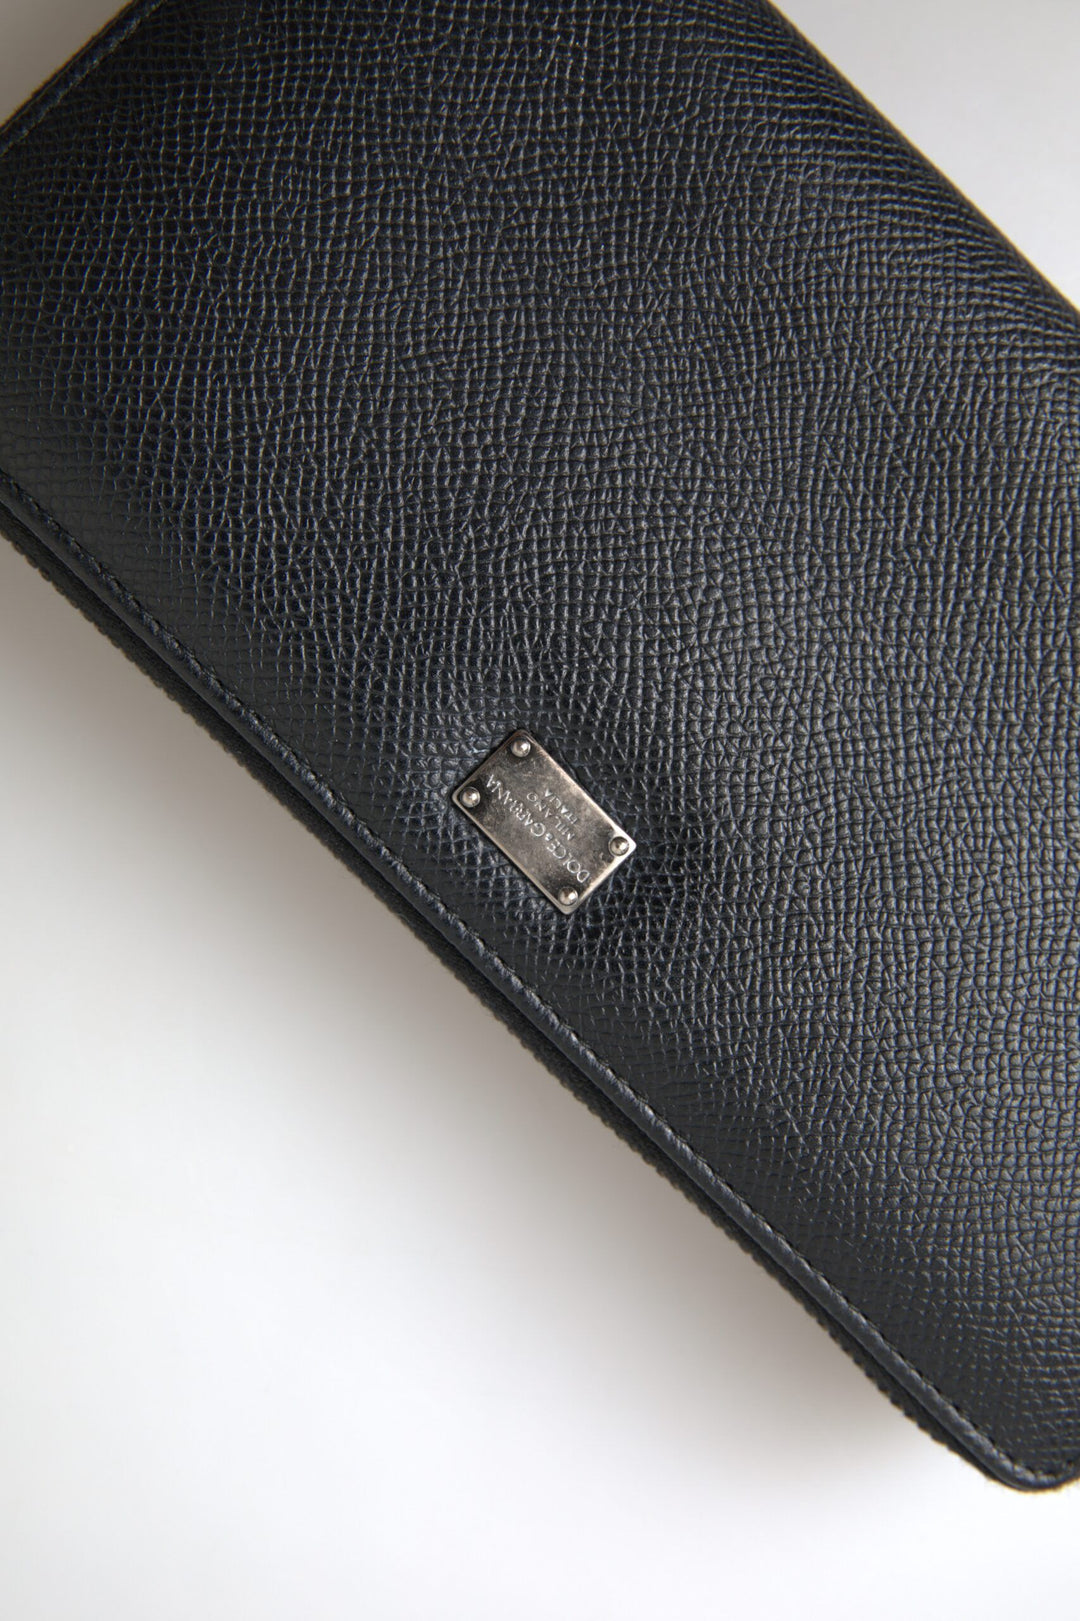 Dolce & Gabbana Black Leather Zip Around Continental Men Wallet